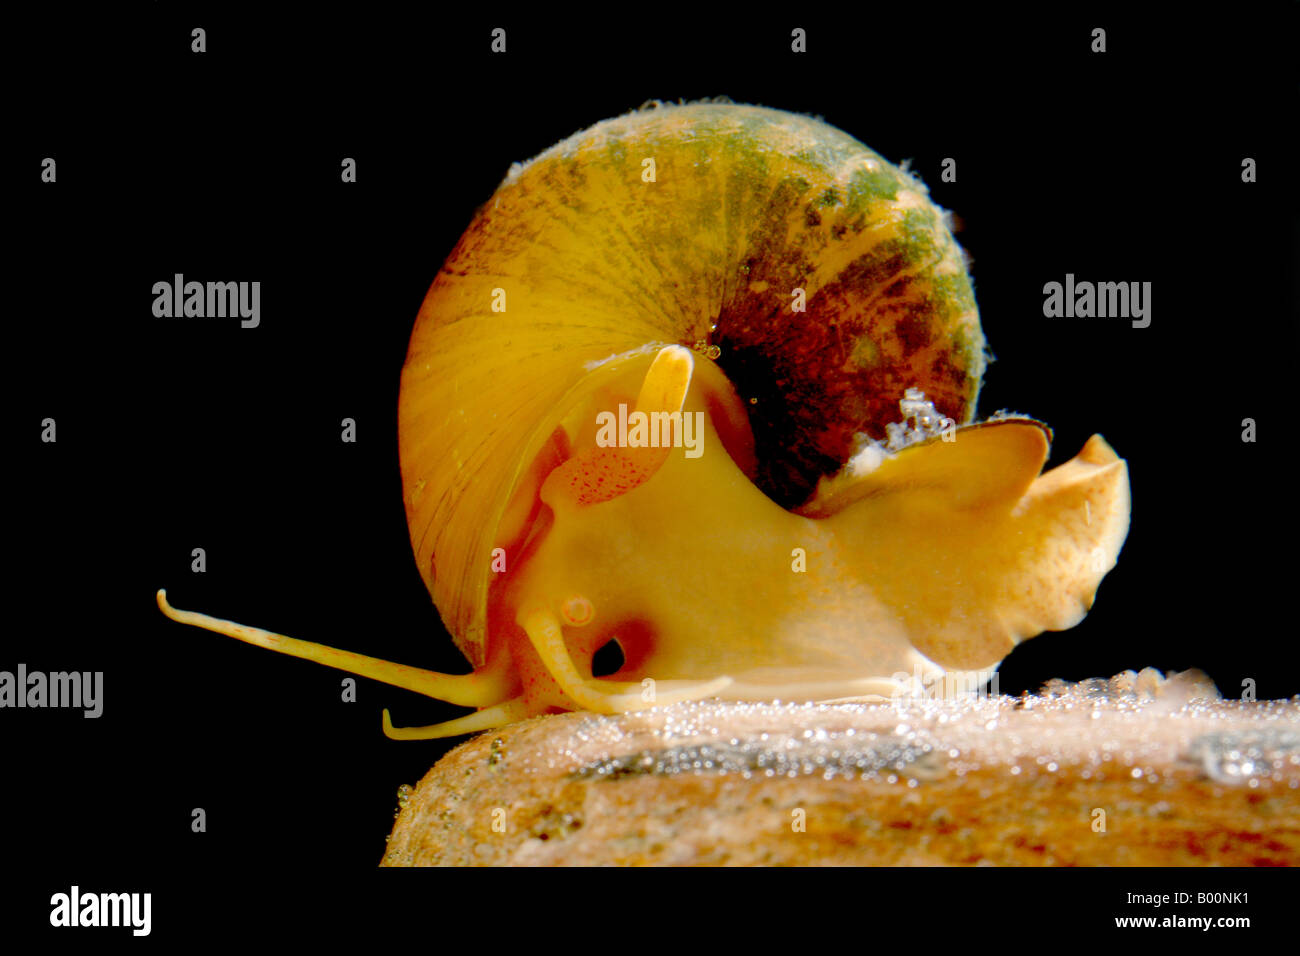 Golden apple snail, Pomacea bridgesii. Stock Photo